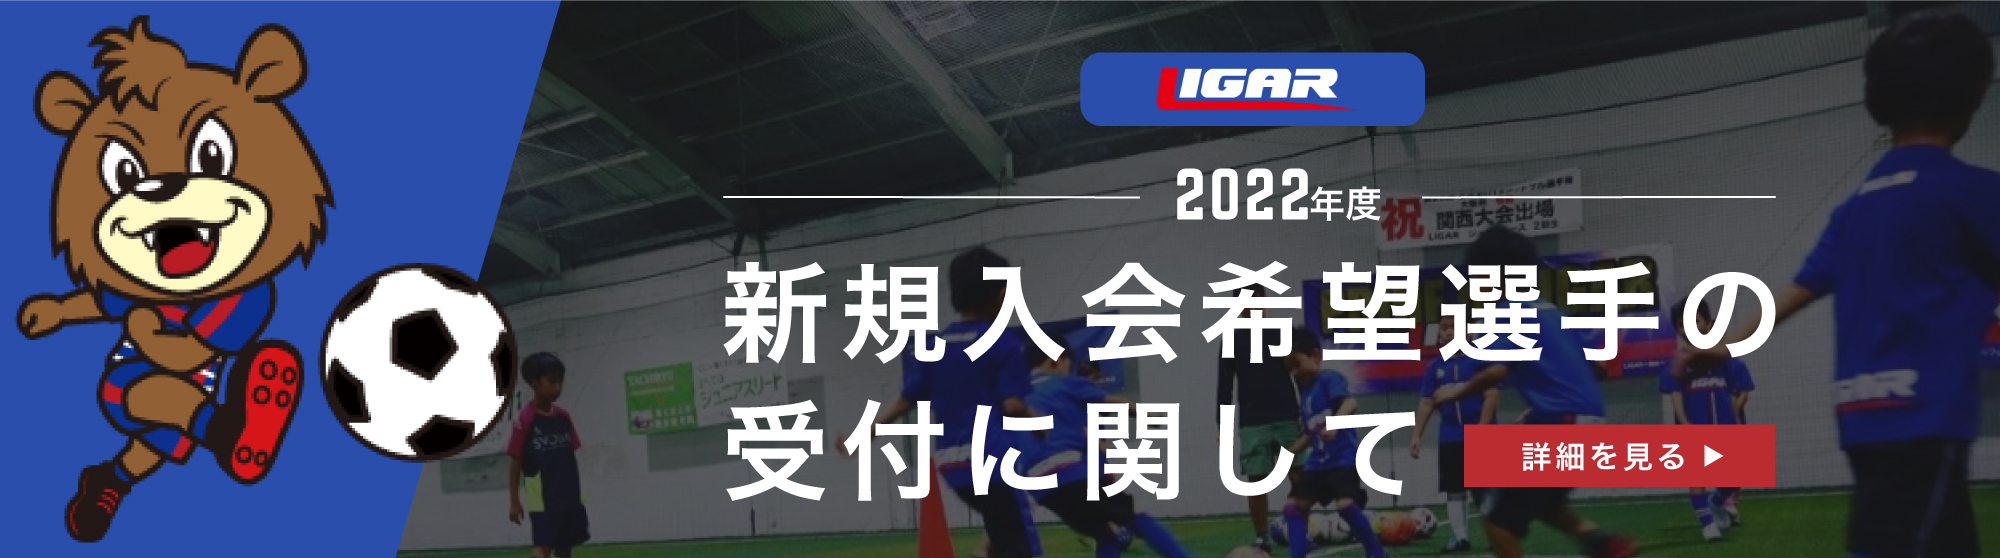 2021年度 LIGAR JPC 新規入会希望選手の受付に関して